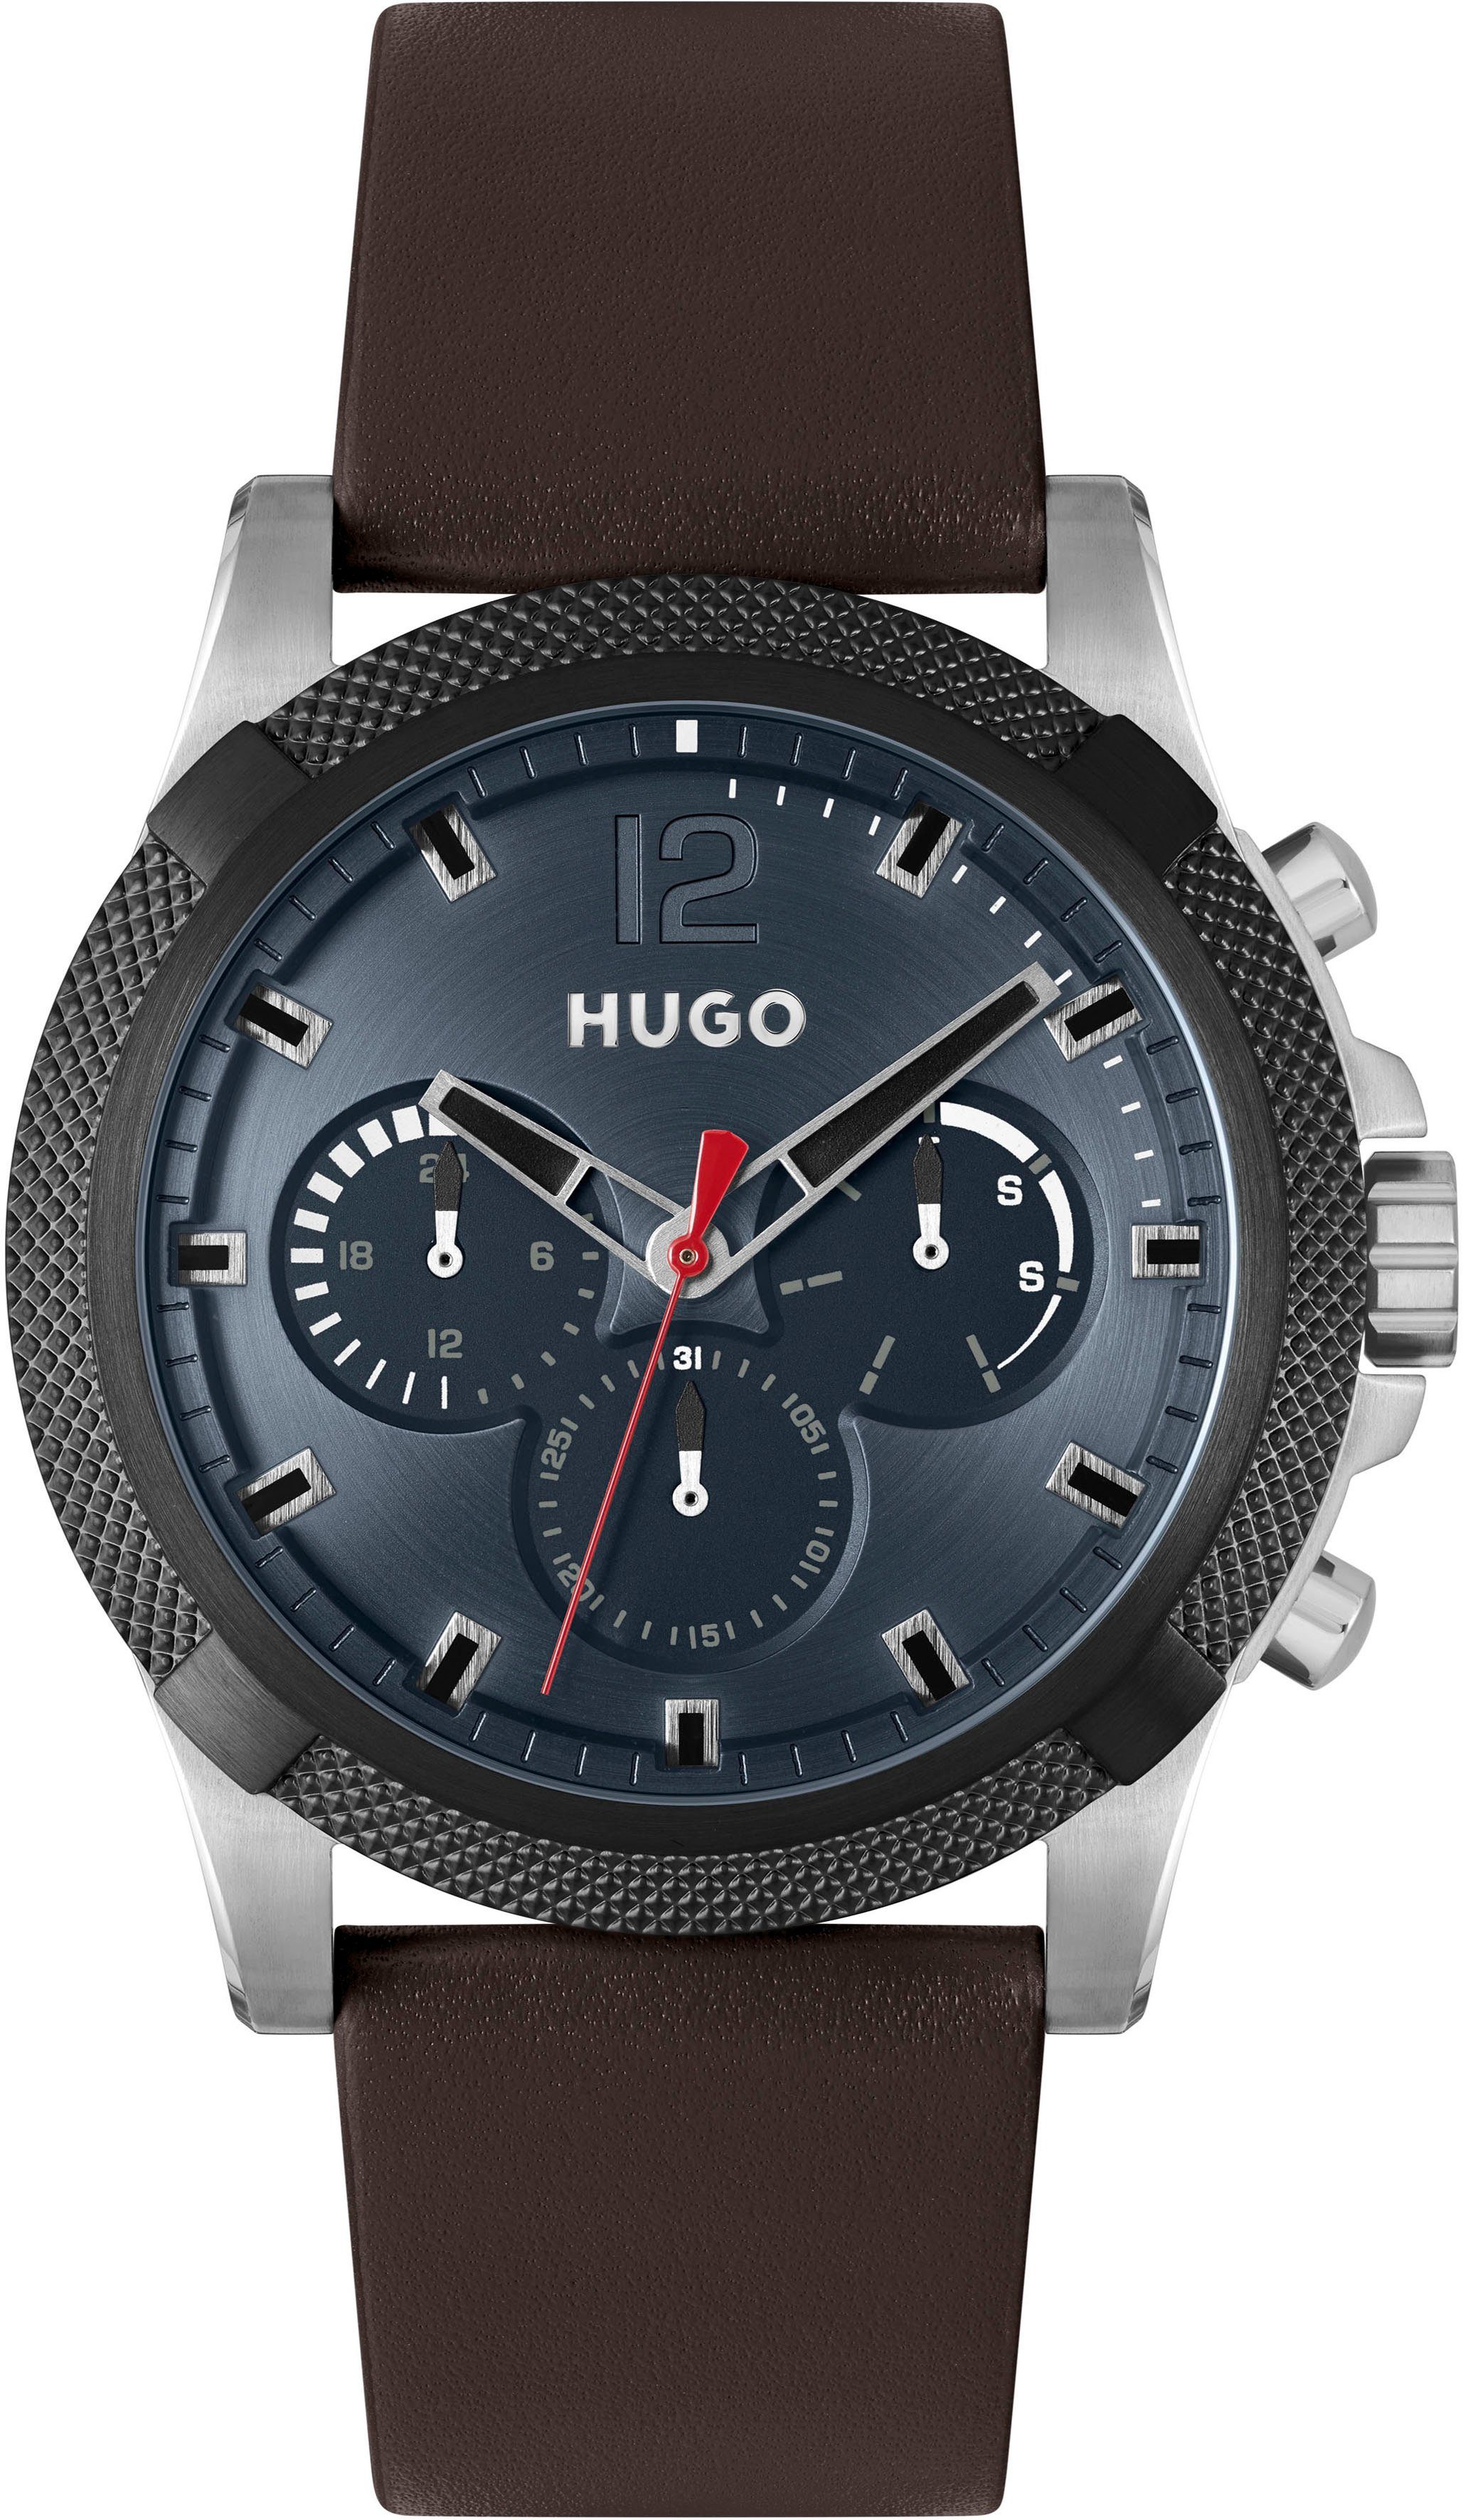 HUGO Multifunktionsuhr #IMPRESS - FOR HIM, 1530294, Quarzuhr, Armbanduhr, Herrenuhr, Datum, 12/24-Stunden-Anzeige